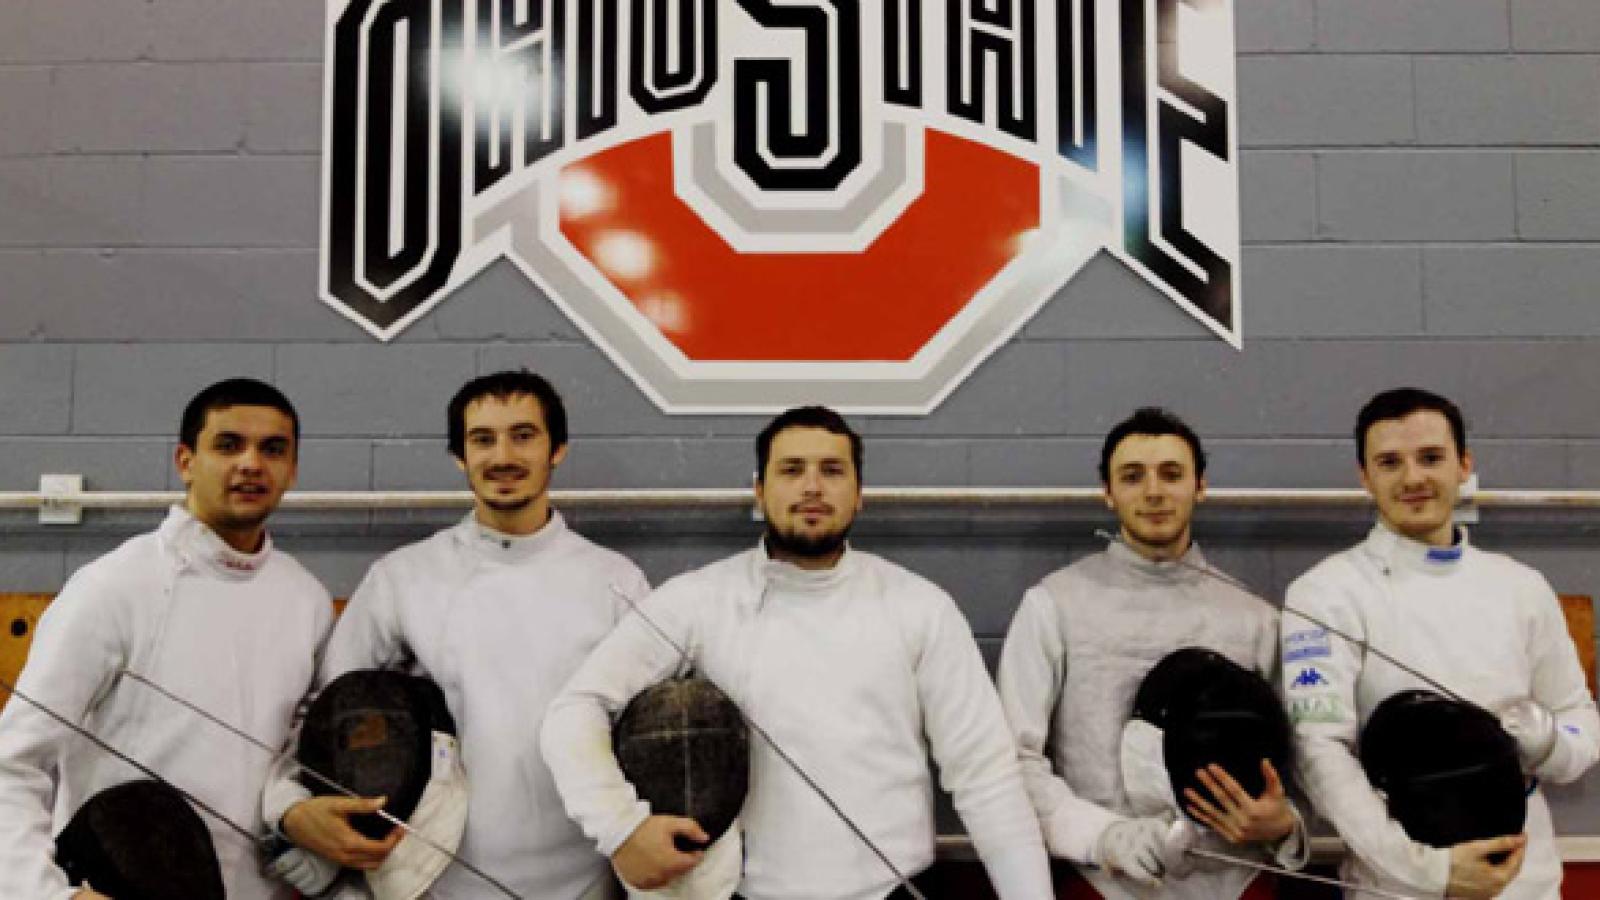 The OSU Fencing team.